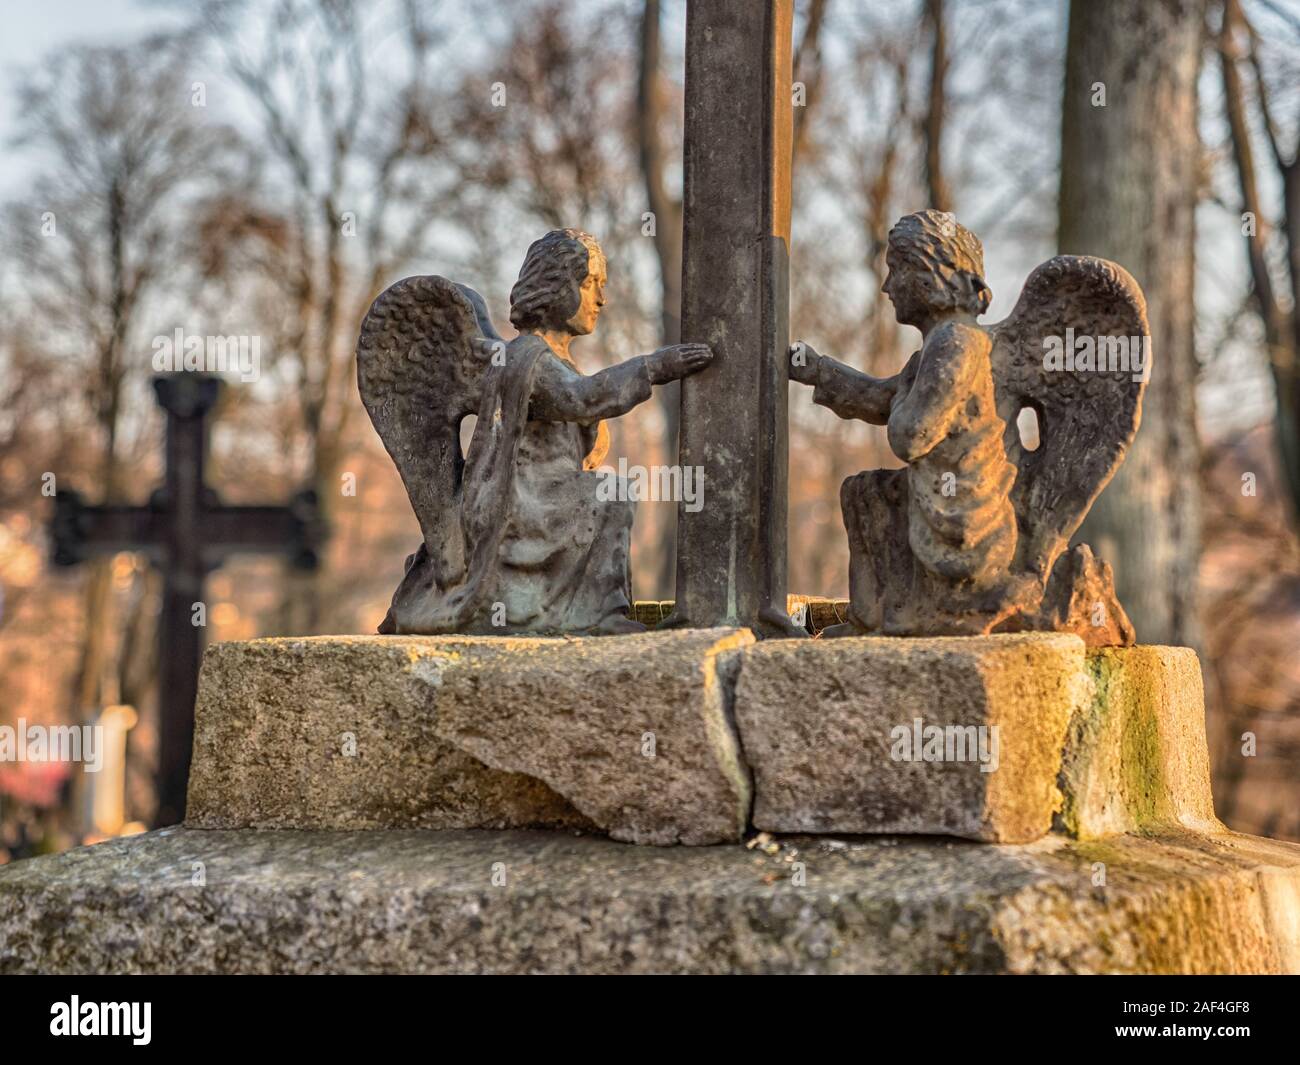 1860, sous le Second Empire, suite, Vilnius, Lituanie - Avril 08, 2018 : Bronze anges sur une tombe le cimetière local dans la région de Klaipėda, Europe Banque D'Images